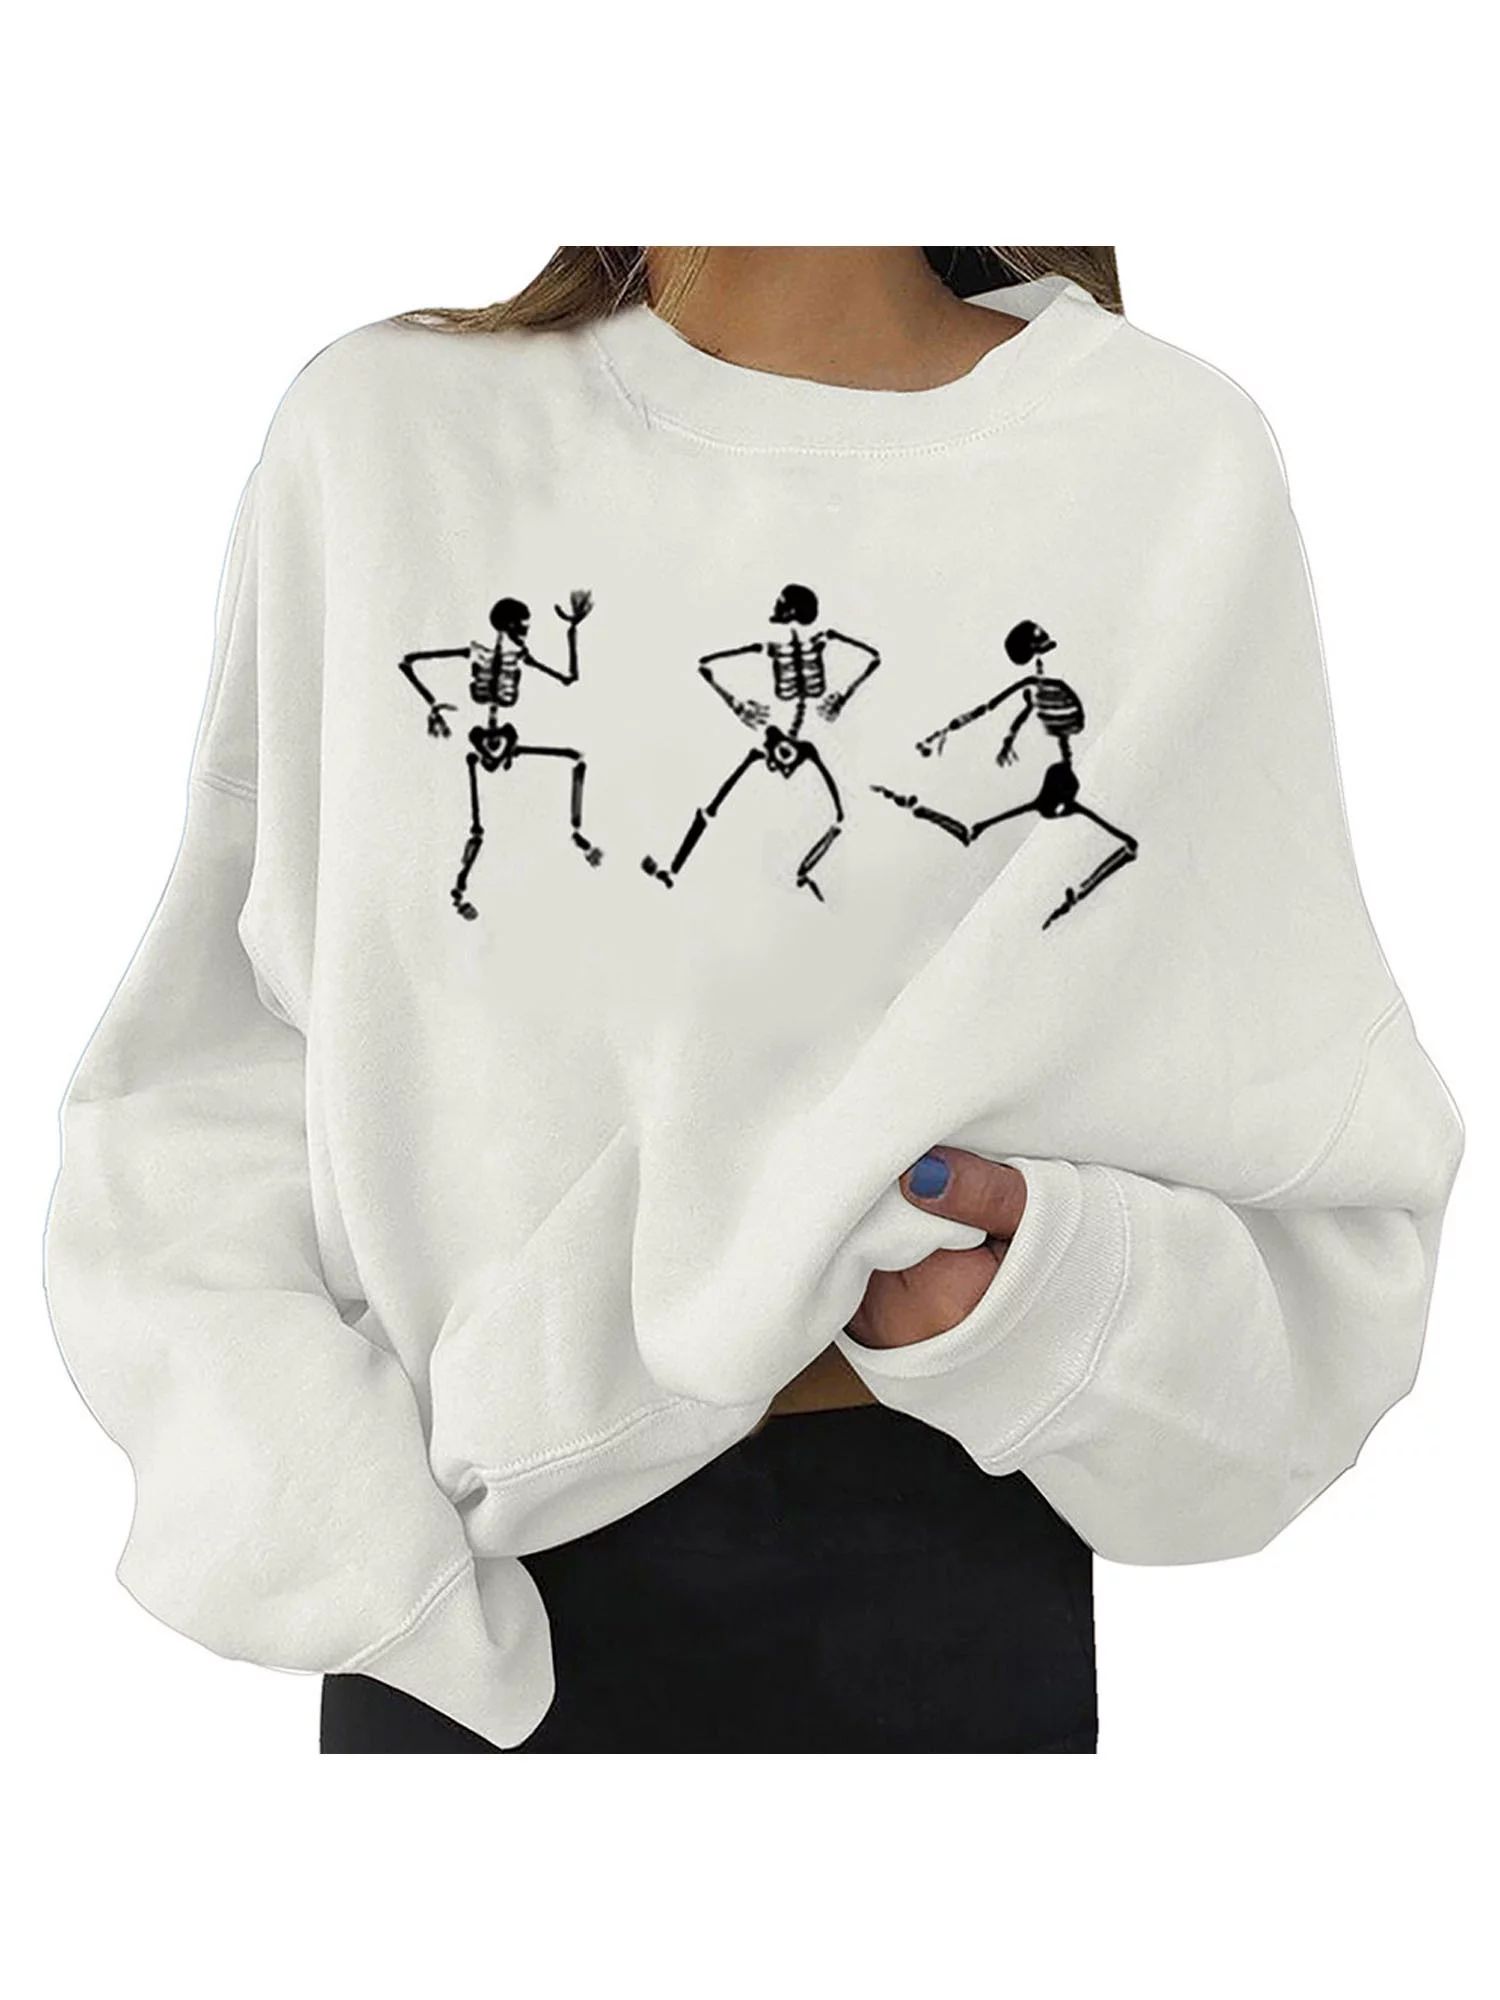 CROWNT Womens Crew Neck Long Sleeve Halloween Skeleton Printed Jumper Casual Sweatshirt Pullover ... | Walmart (US)